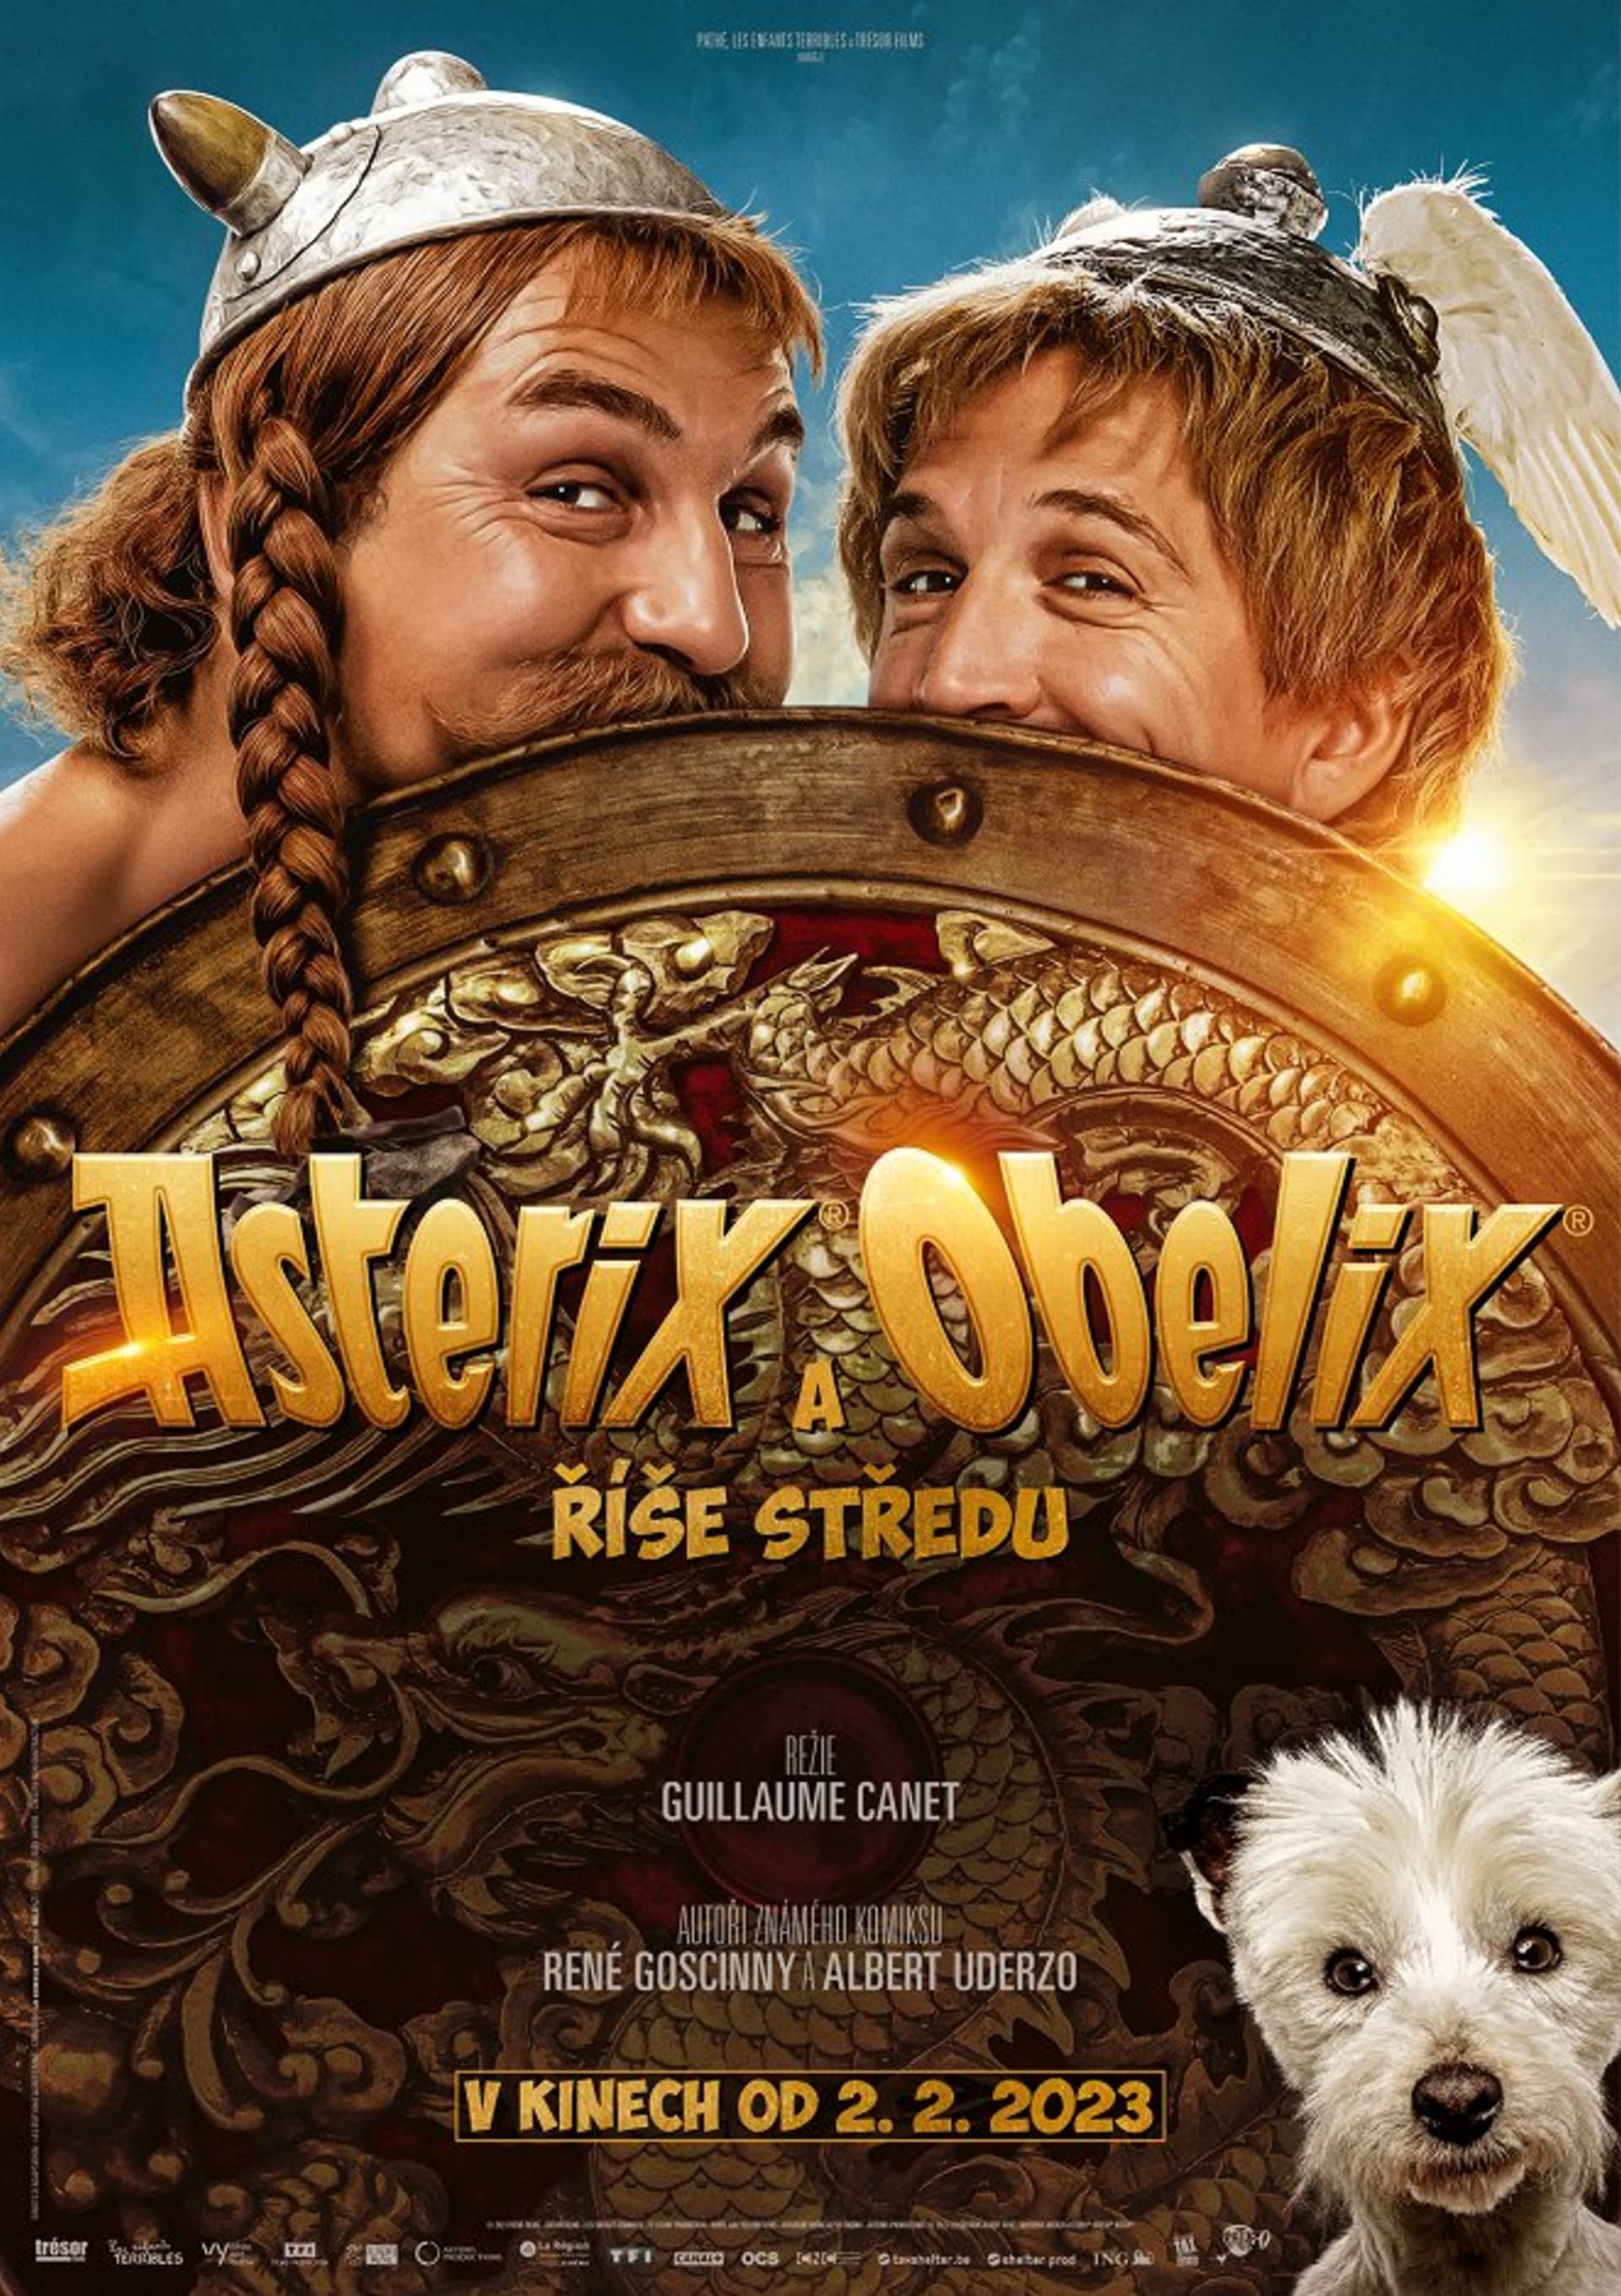 Soutěžte se Showtimem o tematické balíčky k filmu Asterix a Obelix: Říše středu